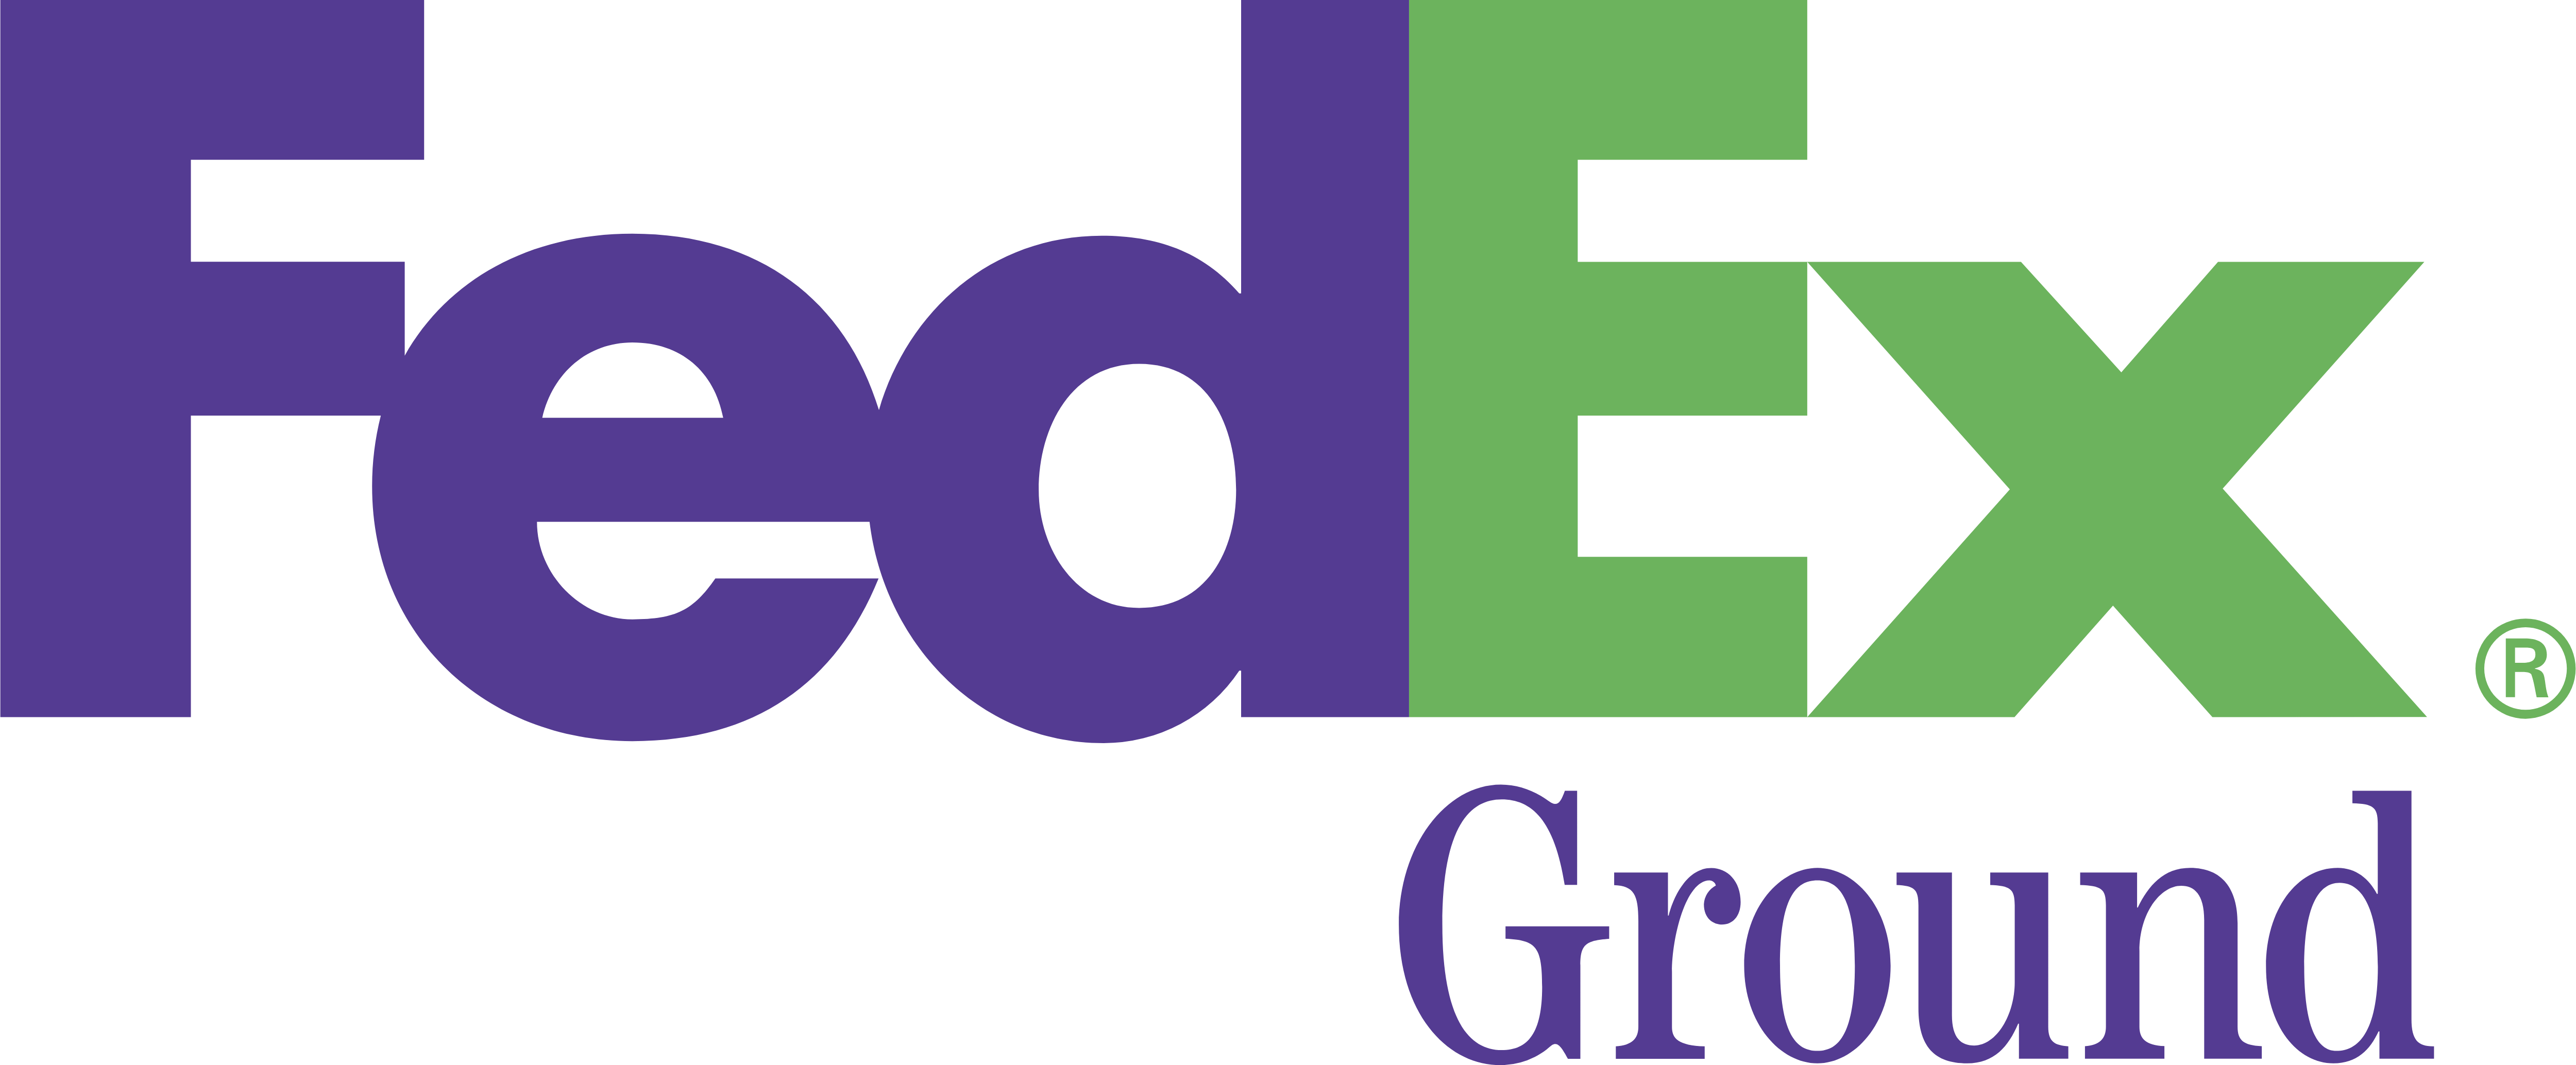 Small FedEx Logo - FedEx – Logos Download